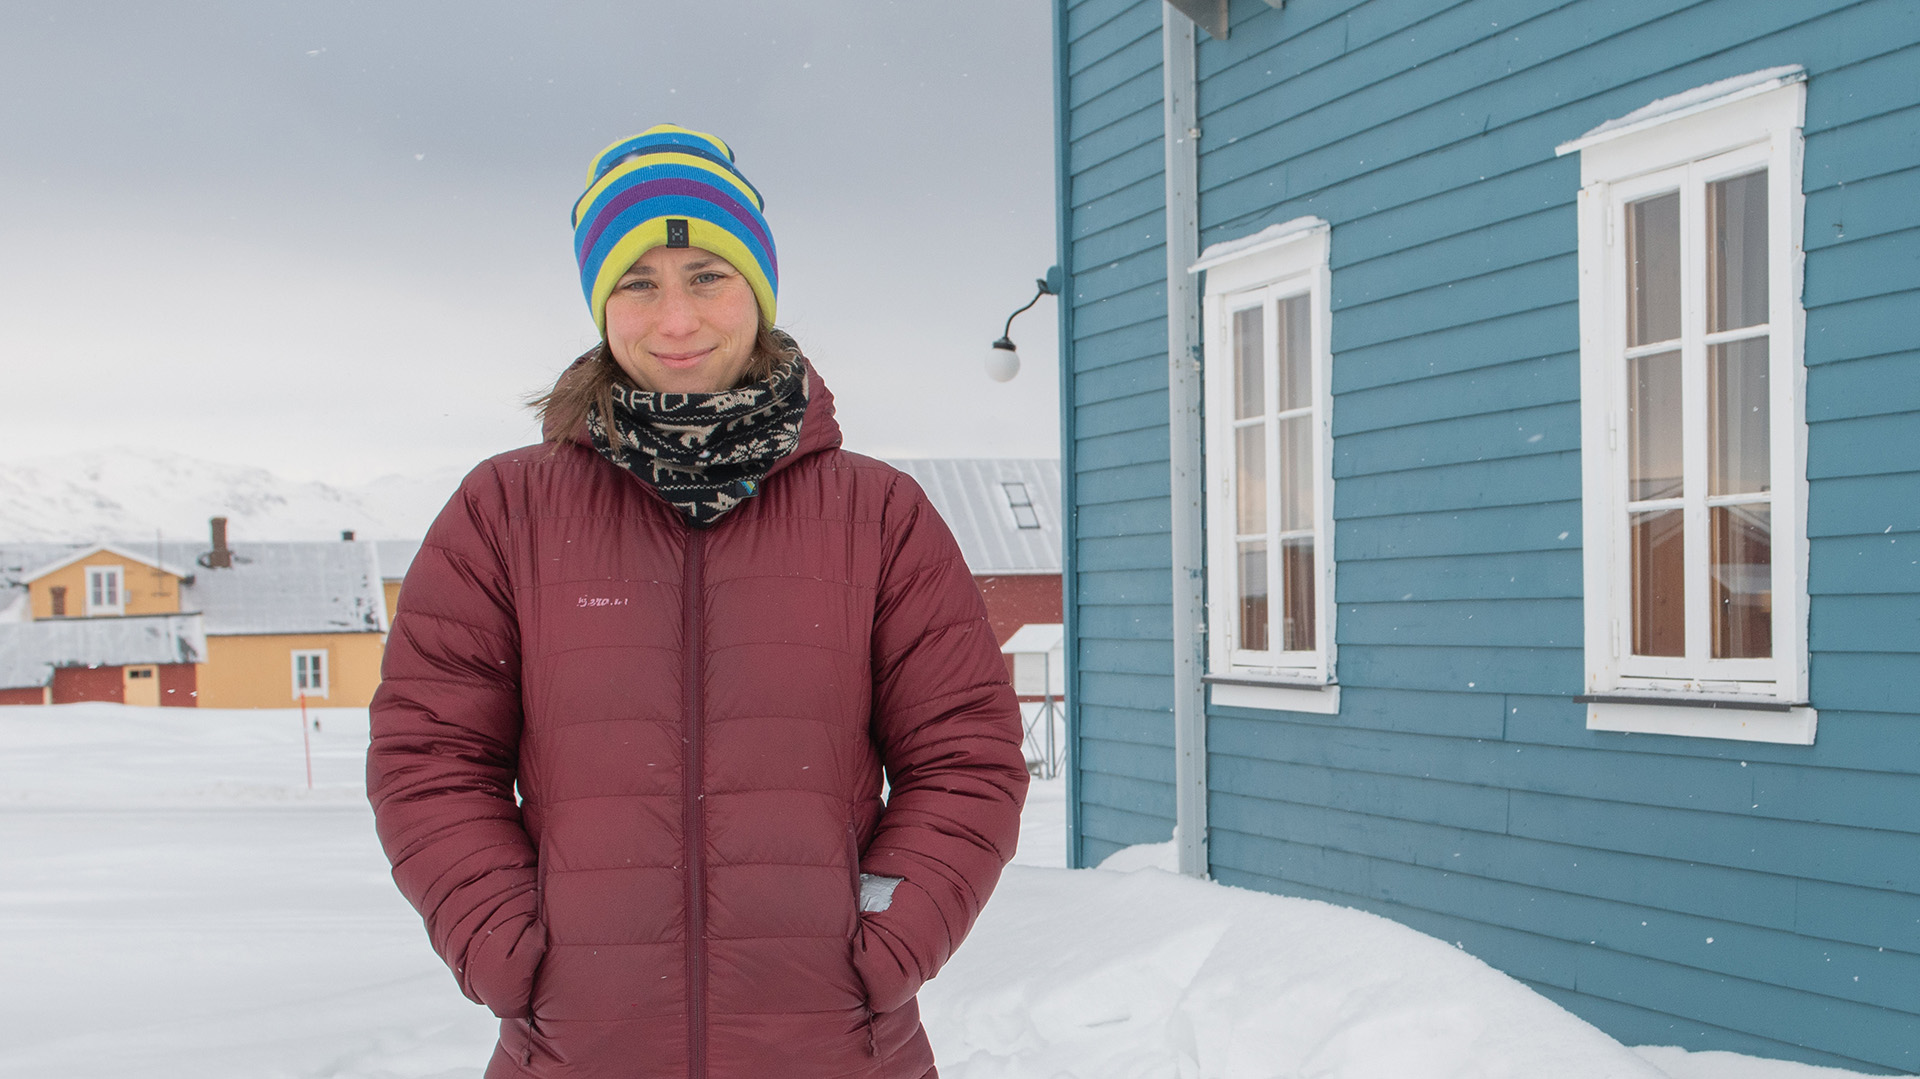 La mujer dice que no planeaba una carrera en logística polar, pero que siempre se sintió atraída por el norte